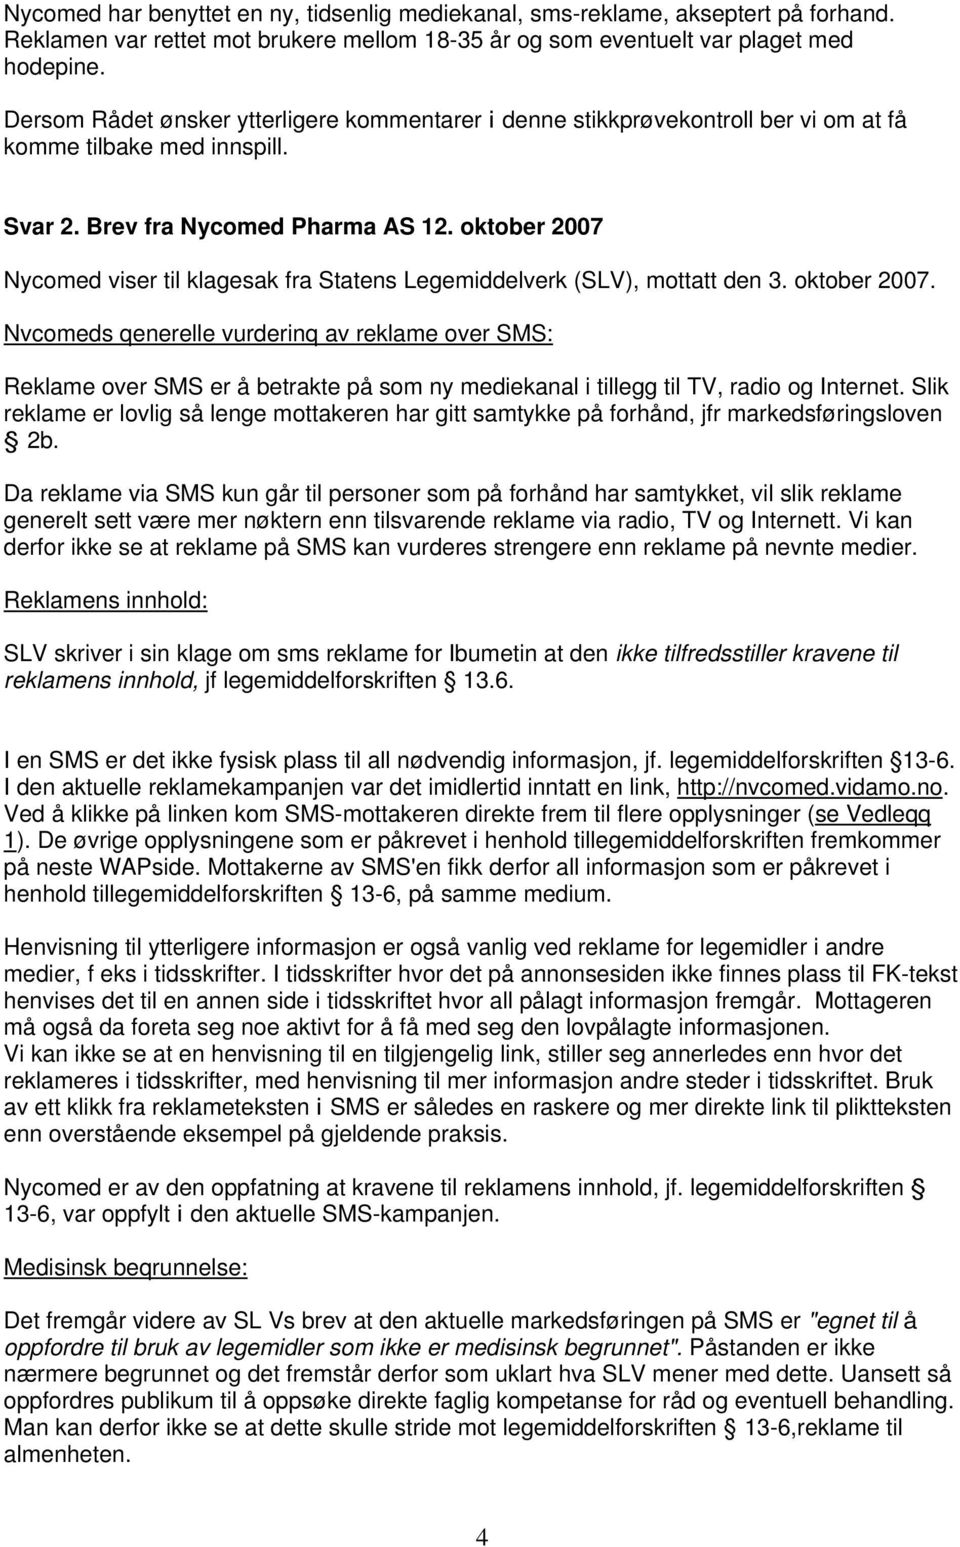 oktober 2007 Nycomed viser til klagesak fra Statens Legemiddelverk (SLV), mottatt den 3. oktober 2007.